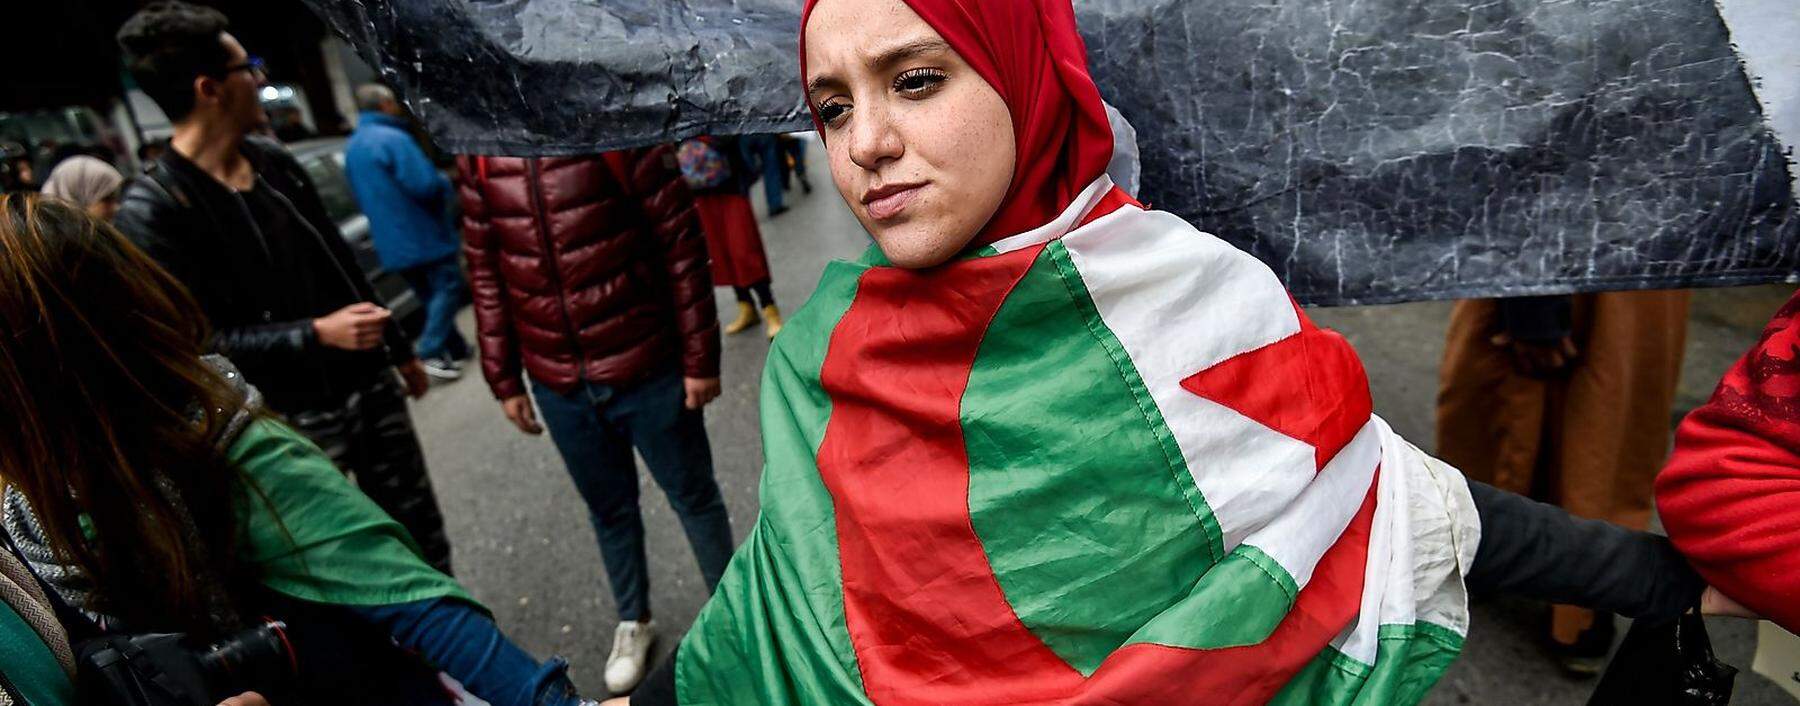 Eine Anhängerin der Protestbewegung demonstriert, in die Nationalflagge gehüllt, in Algier. Doch die Revolte verliert an Kraft.